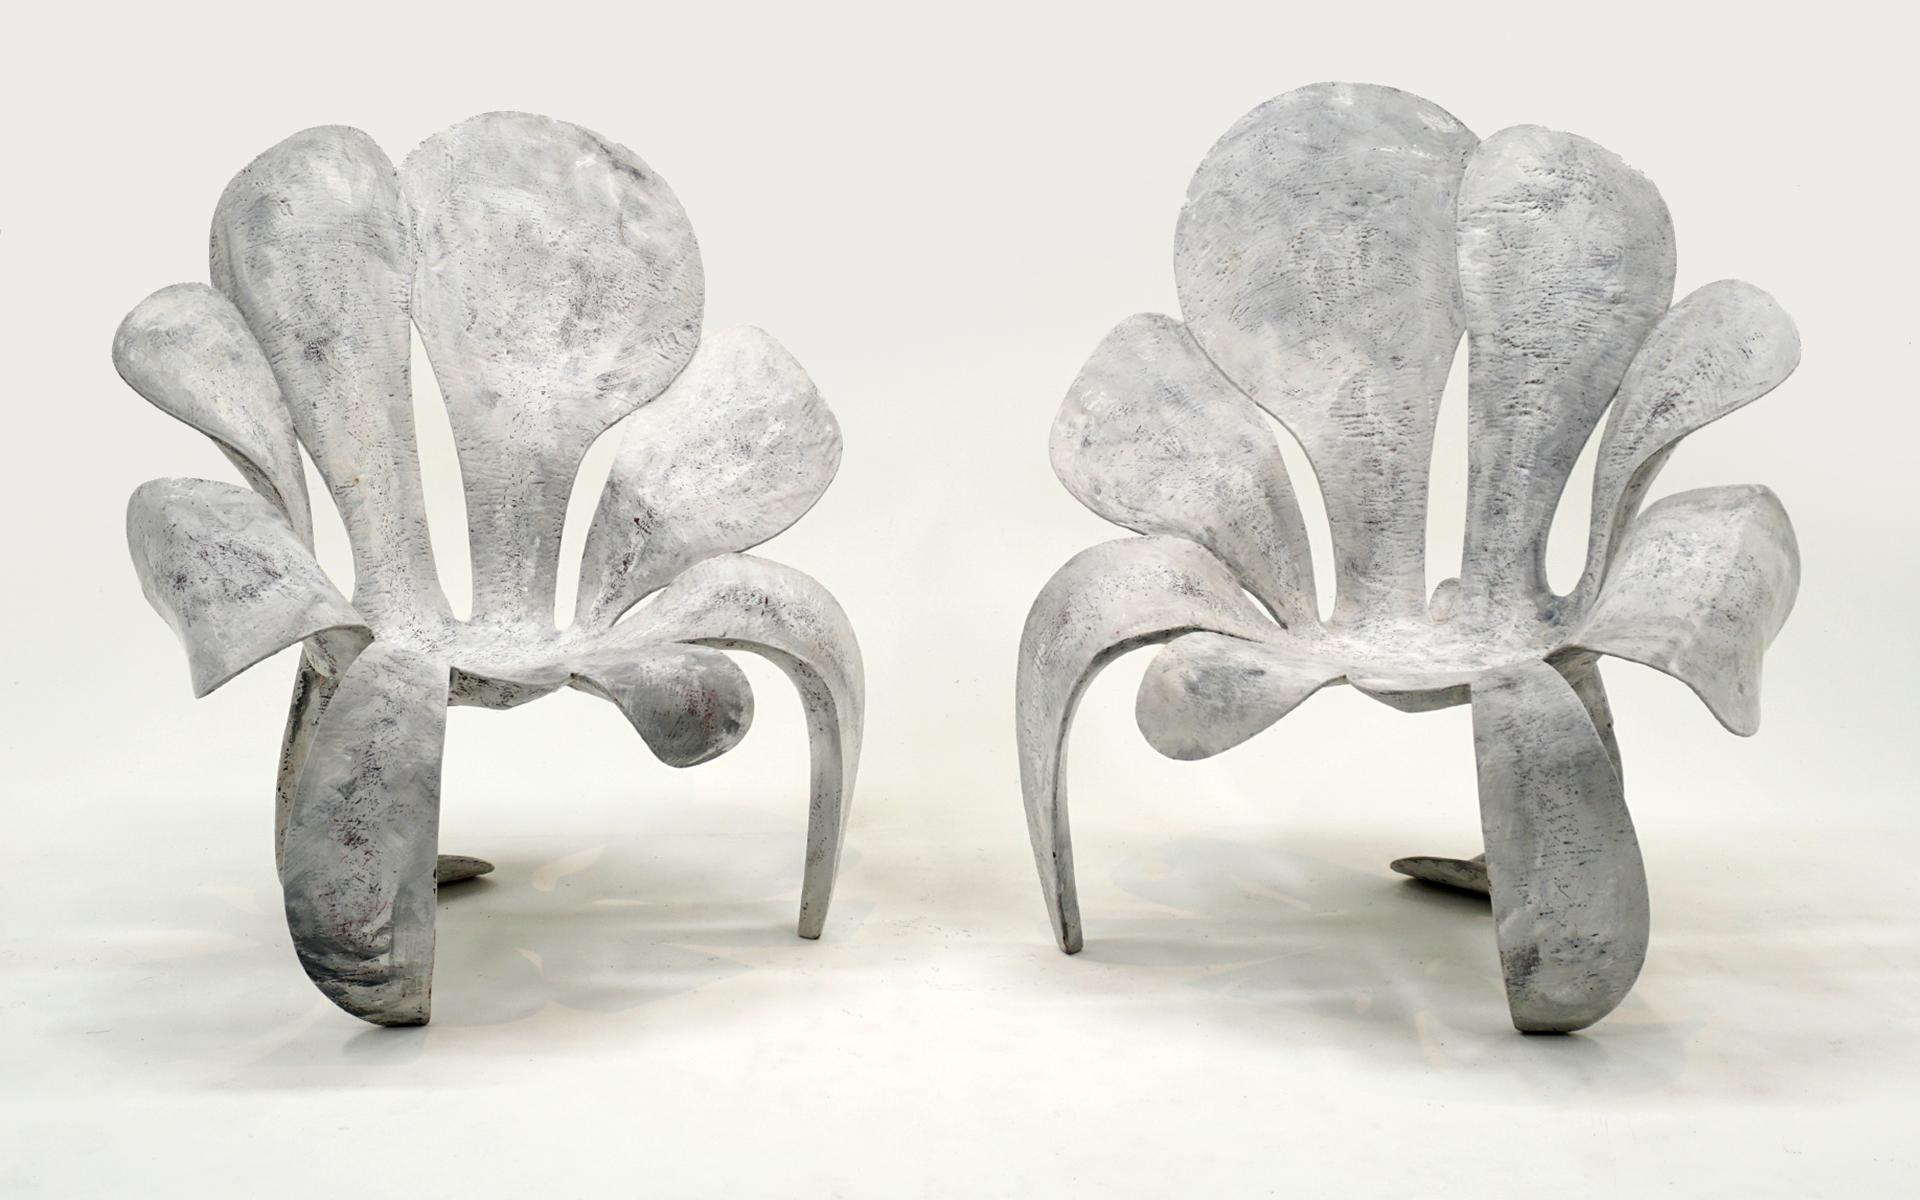 Wunderschönes Paar Sessel mit hoher Rückenlehne im Stil von Blumenblättern, entworfen von Yves Boucard.  Hochbelastbare, polychromierte Verbundkonstruktion, sehr stabil und komfortabel.  Signiert und datiert auf der Unterseite jedes Exemplars 